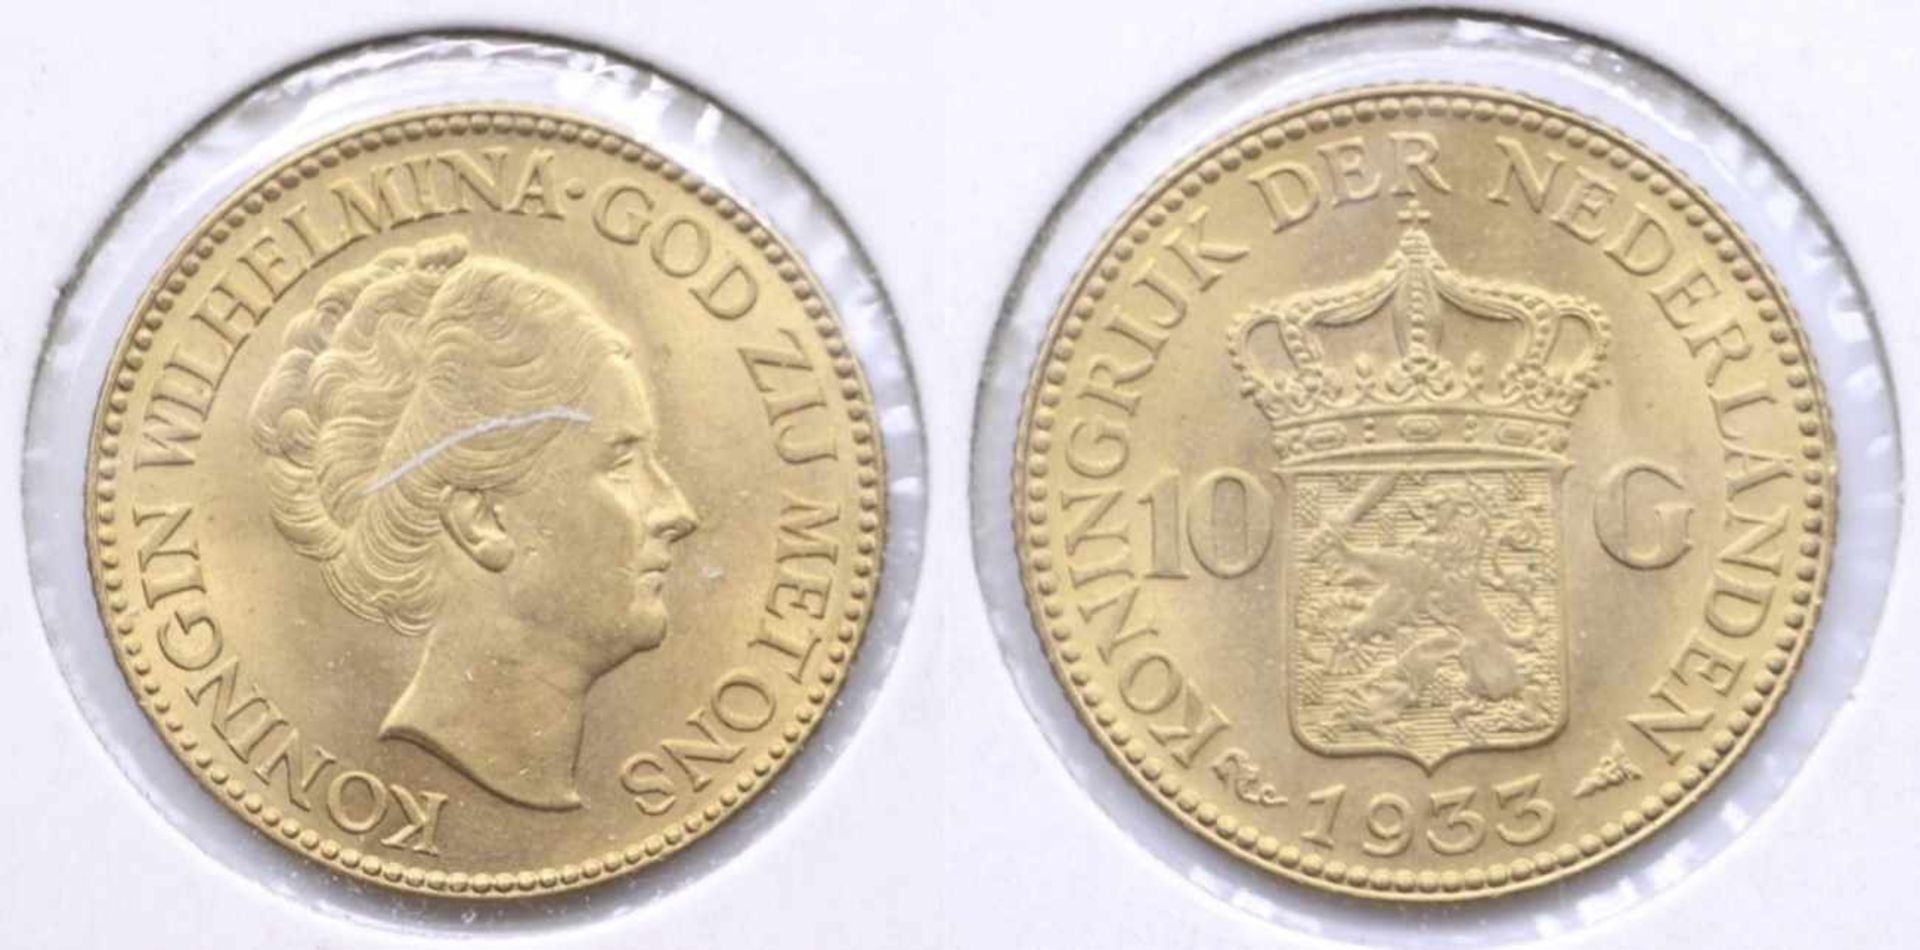 Goldmünze - Niederlande - 10 Gulden 1935, Königin Wilhelmine von Niederlande, ca. 7,98 Gramm